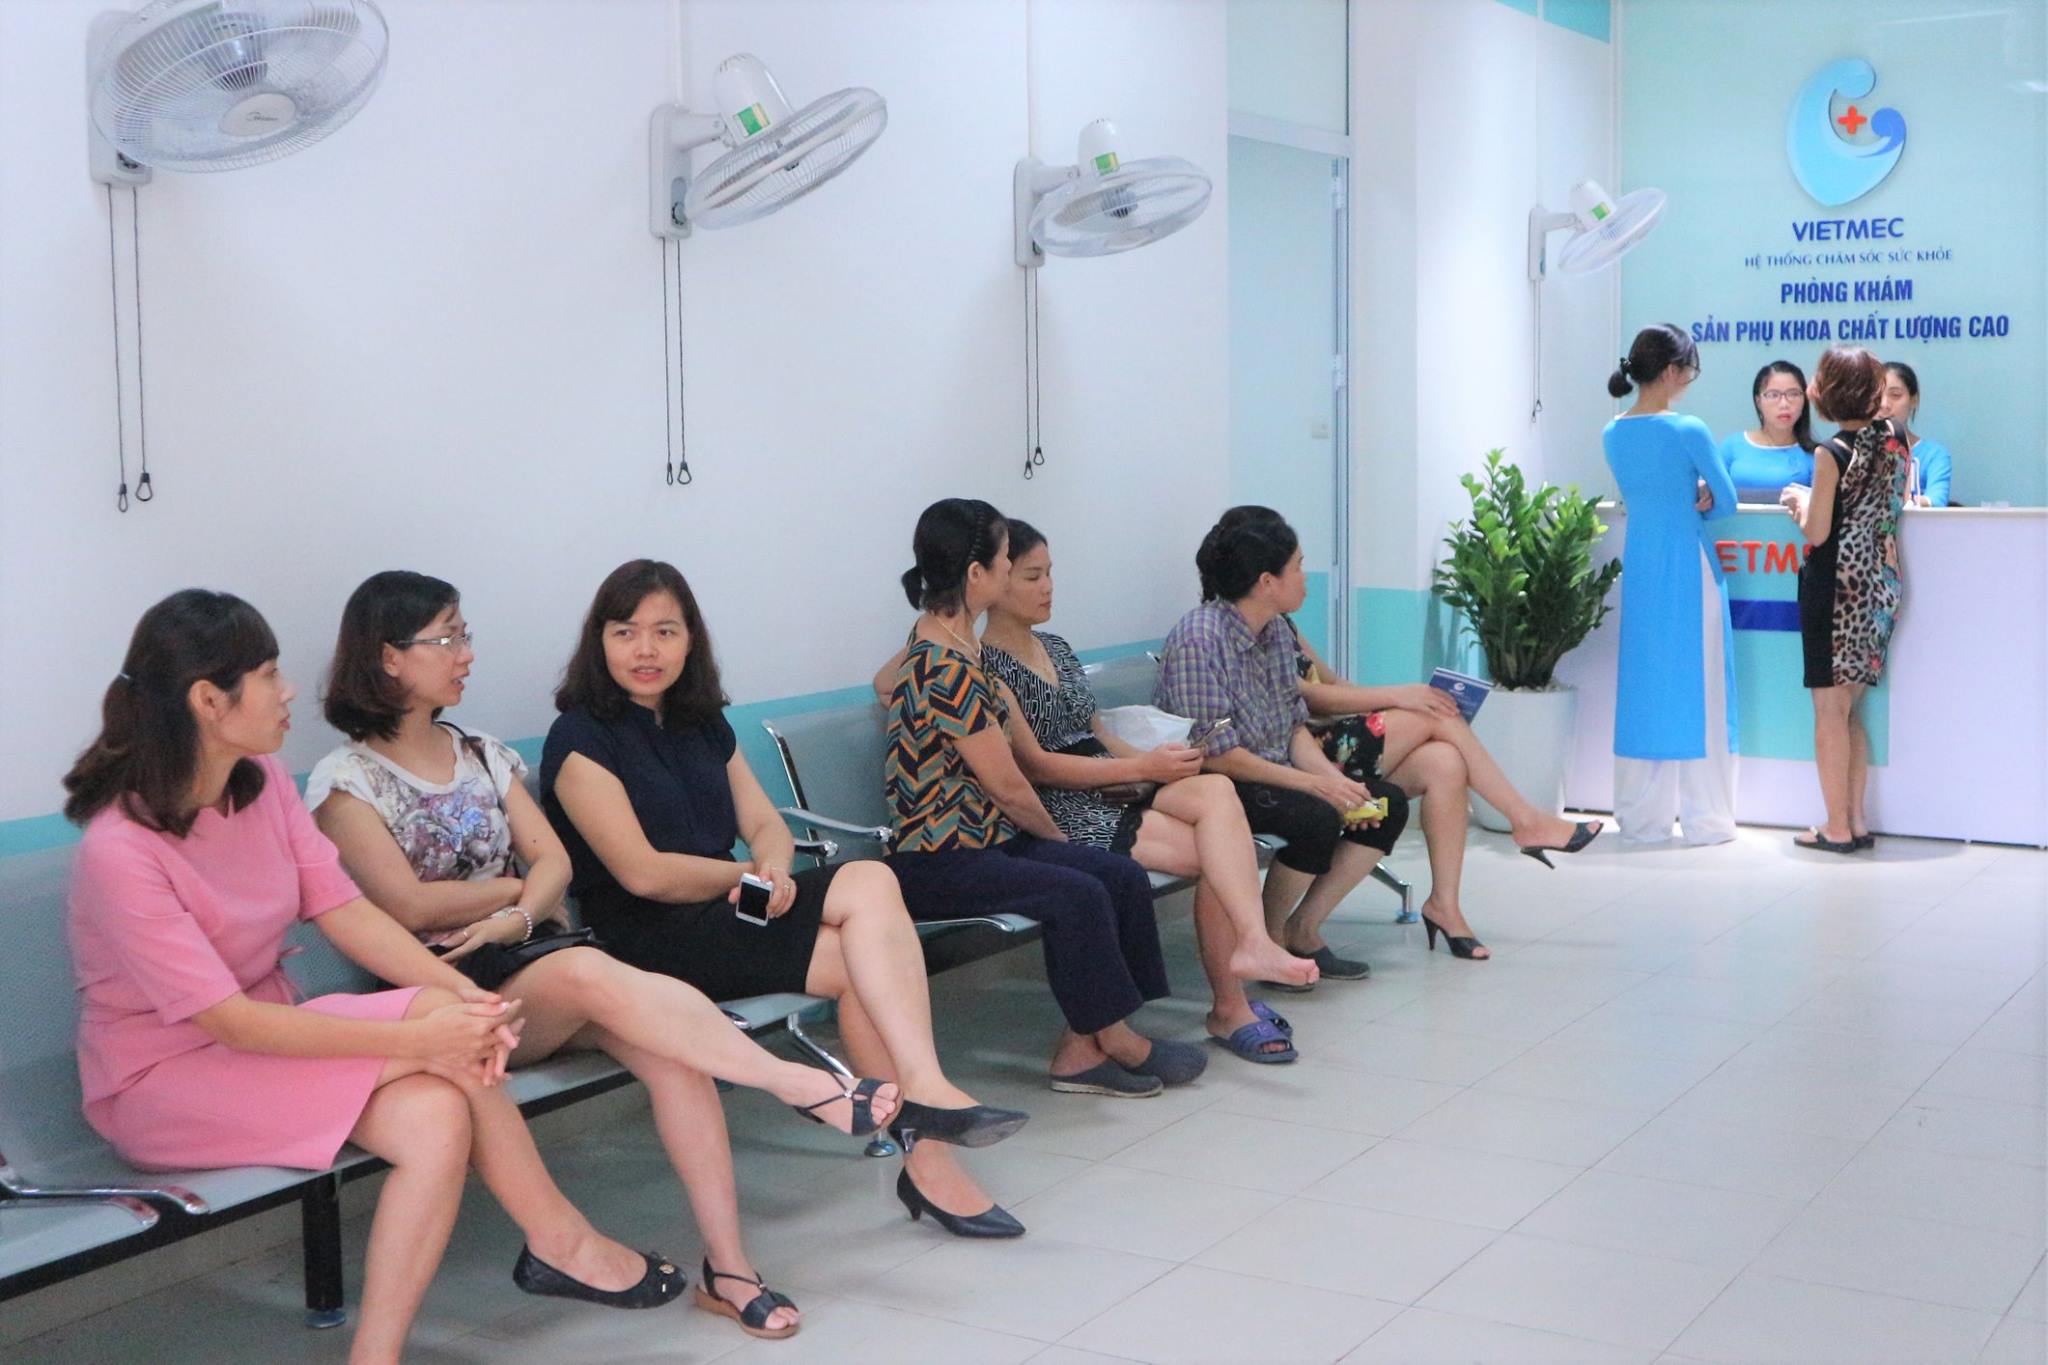 Tại Vietmec, rất nhiều chị em đến đây để được tư vấn và thực hiện đặt, tháo vòng tránh thai mỗi ngày